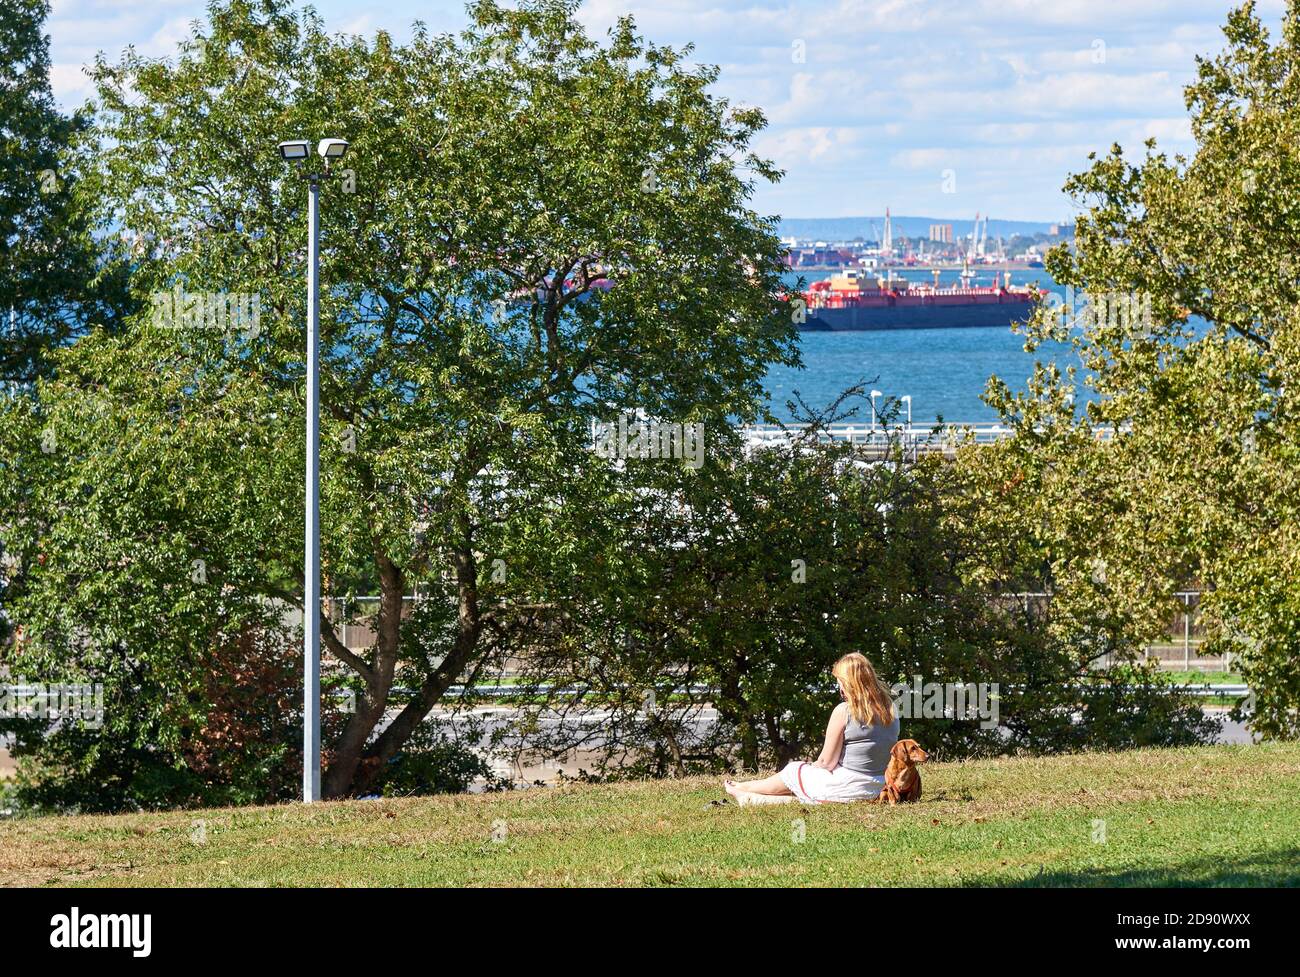 Brooklyn, NY - September 30 2020: Ein Mädchen und ihr Hund sitzen auf dem Gras im Owl's Head Park in Bay Ridge Brooklyn, mit Blick auf die Schiffe in New York Harb Stockfoto